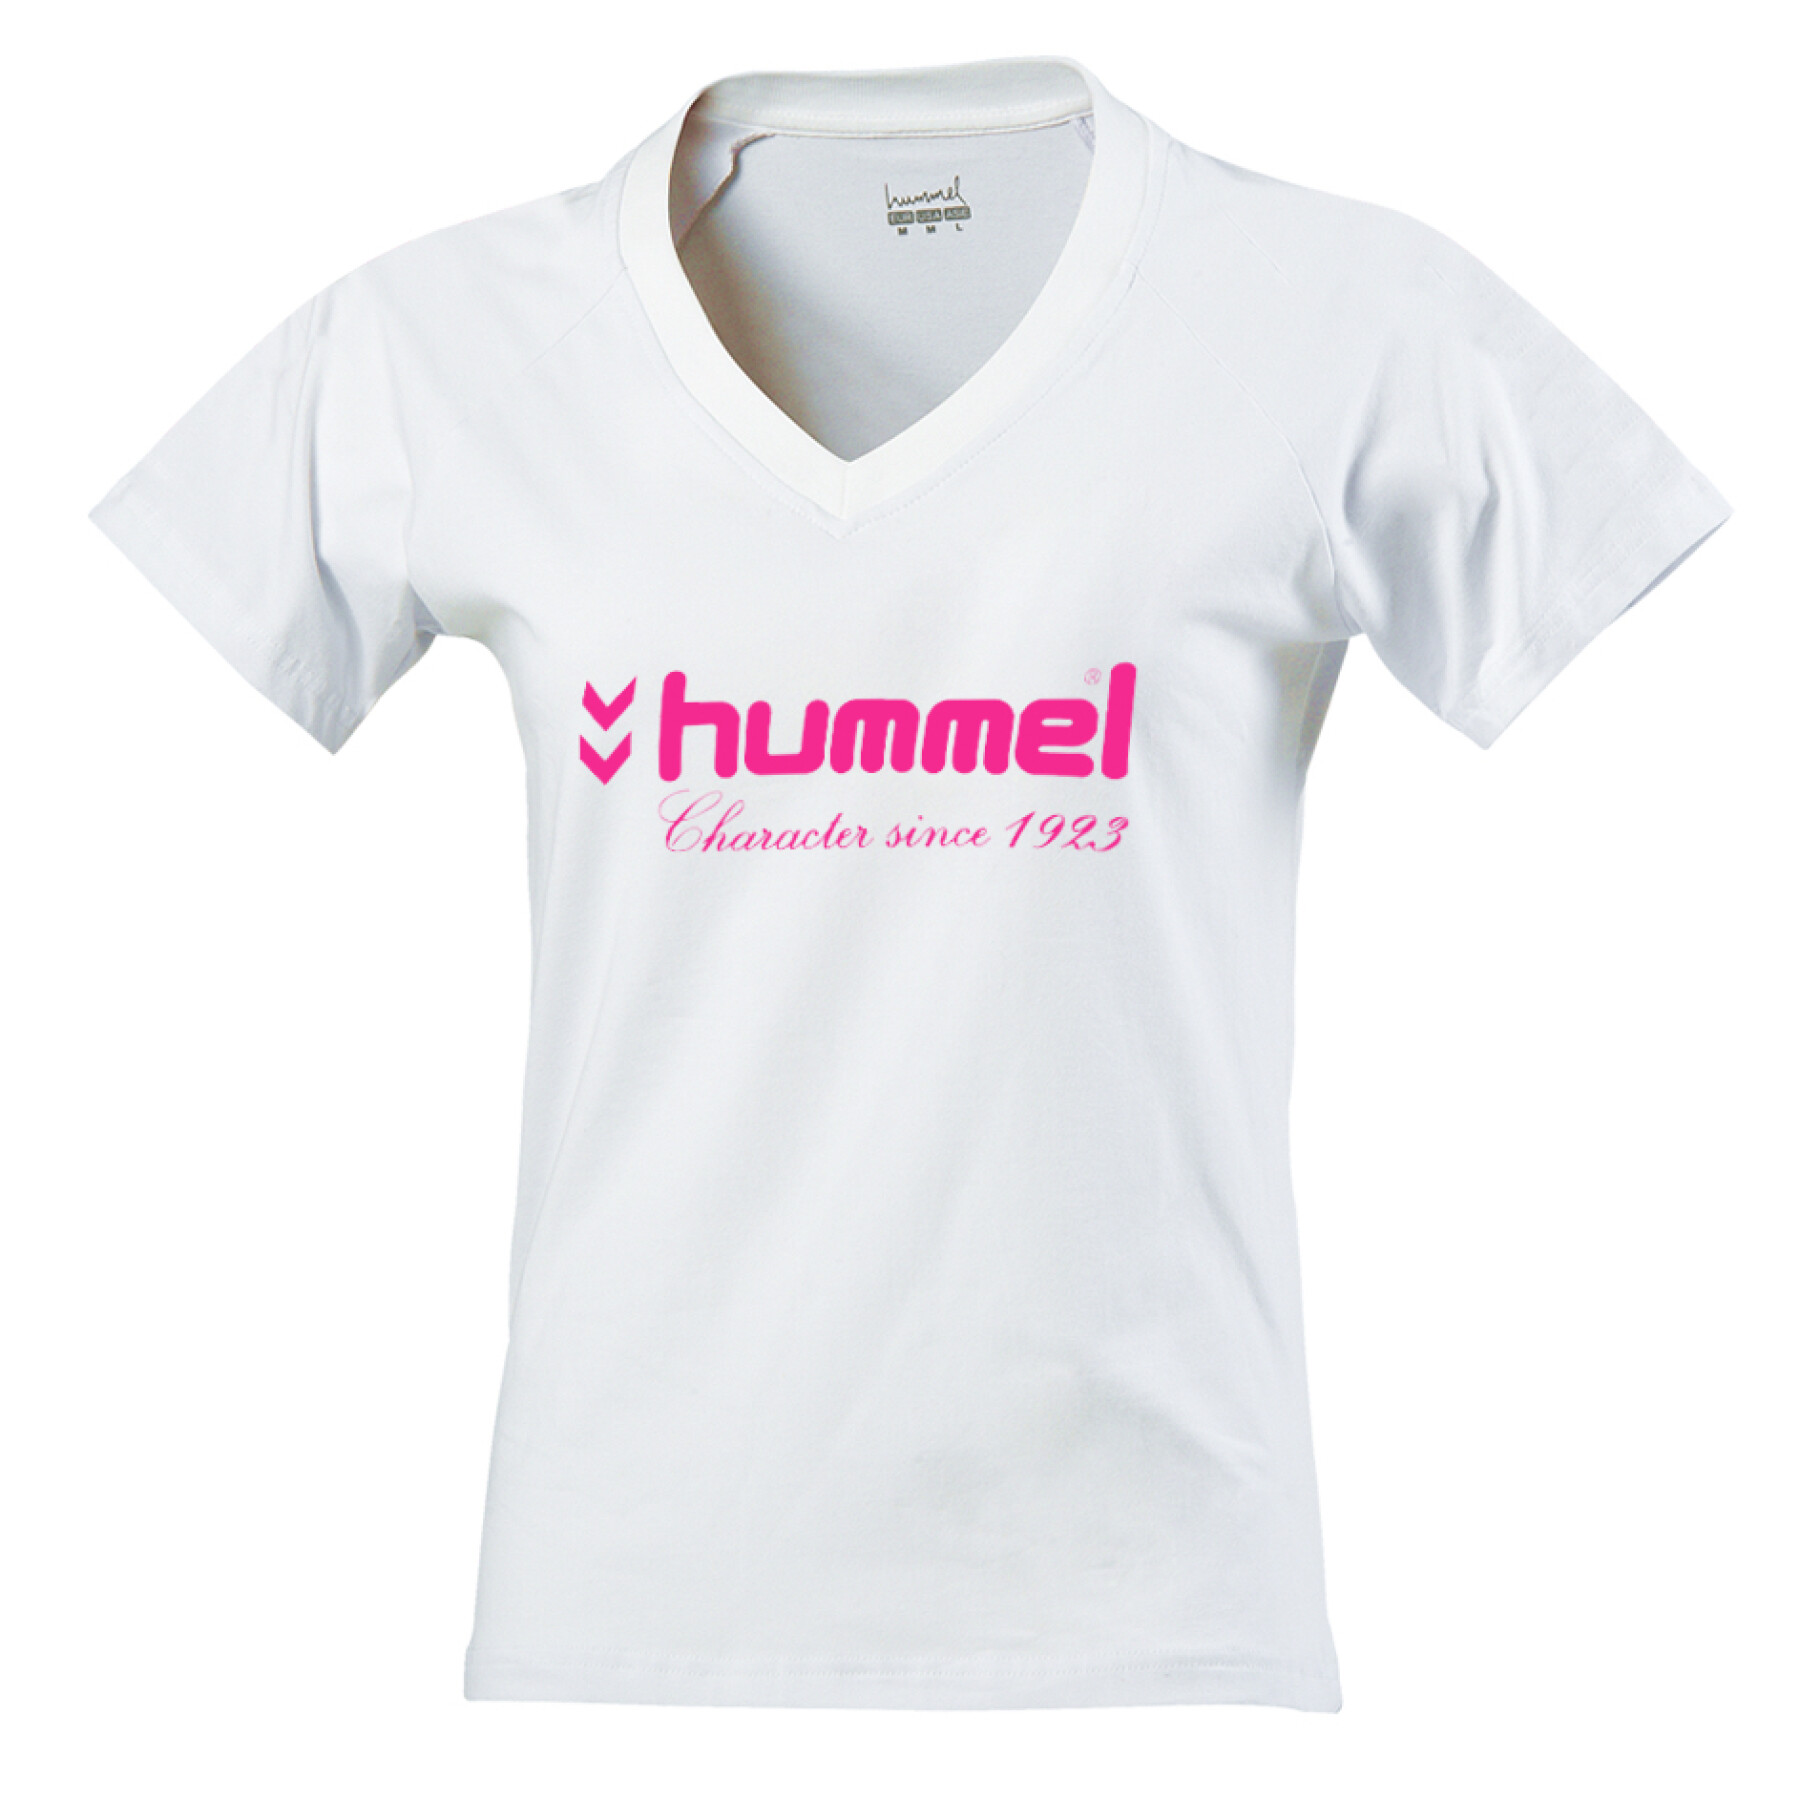 Women's T-shirt hummel UH 